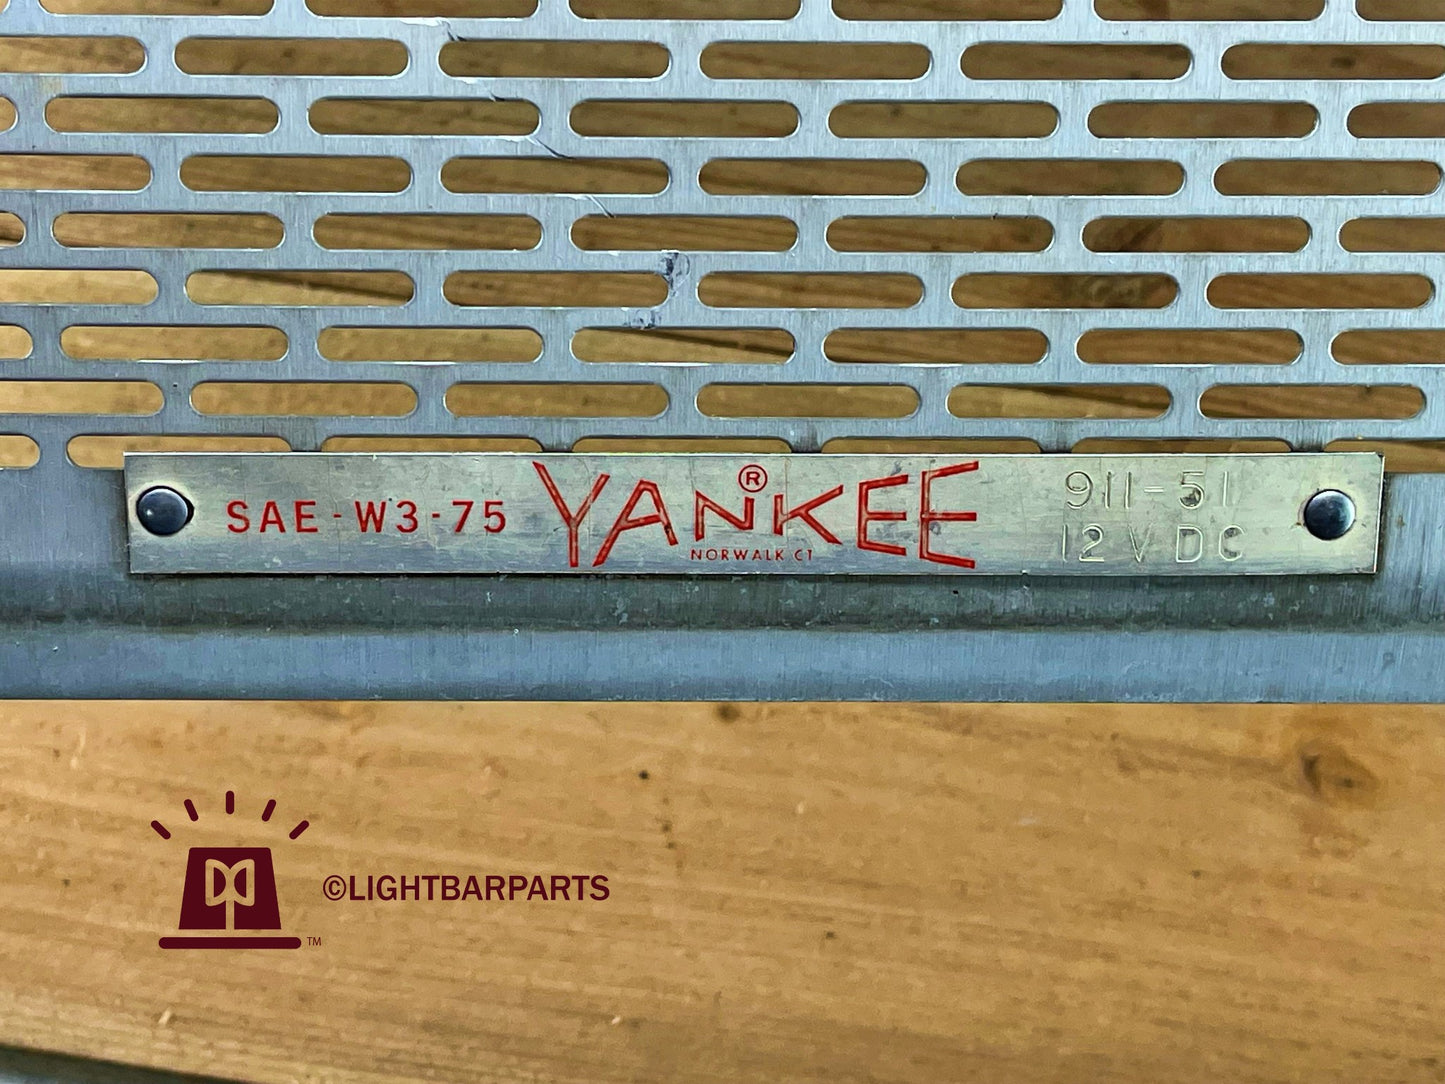 Yankee 911-51 Lightbar - 14-1/4" Speaker Grill Cover